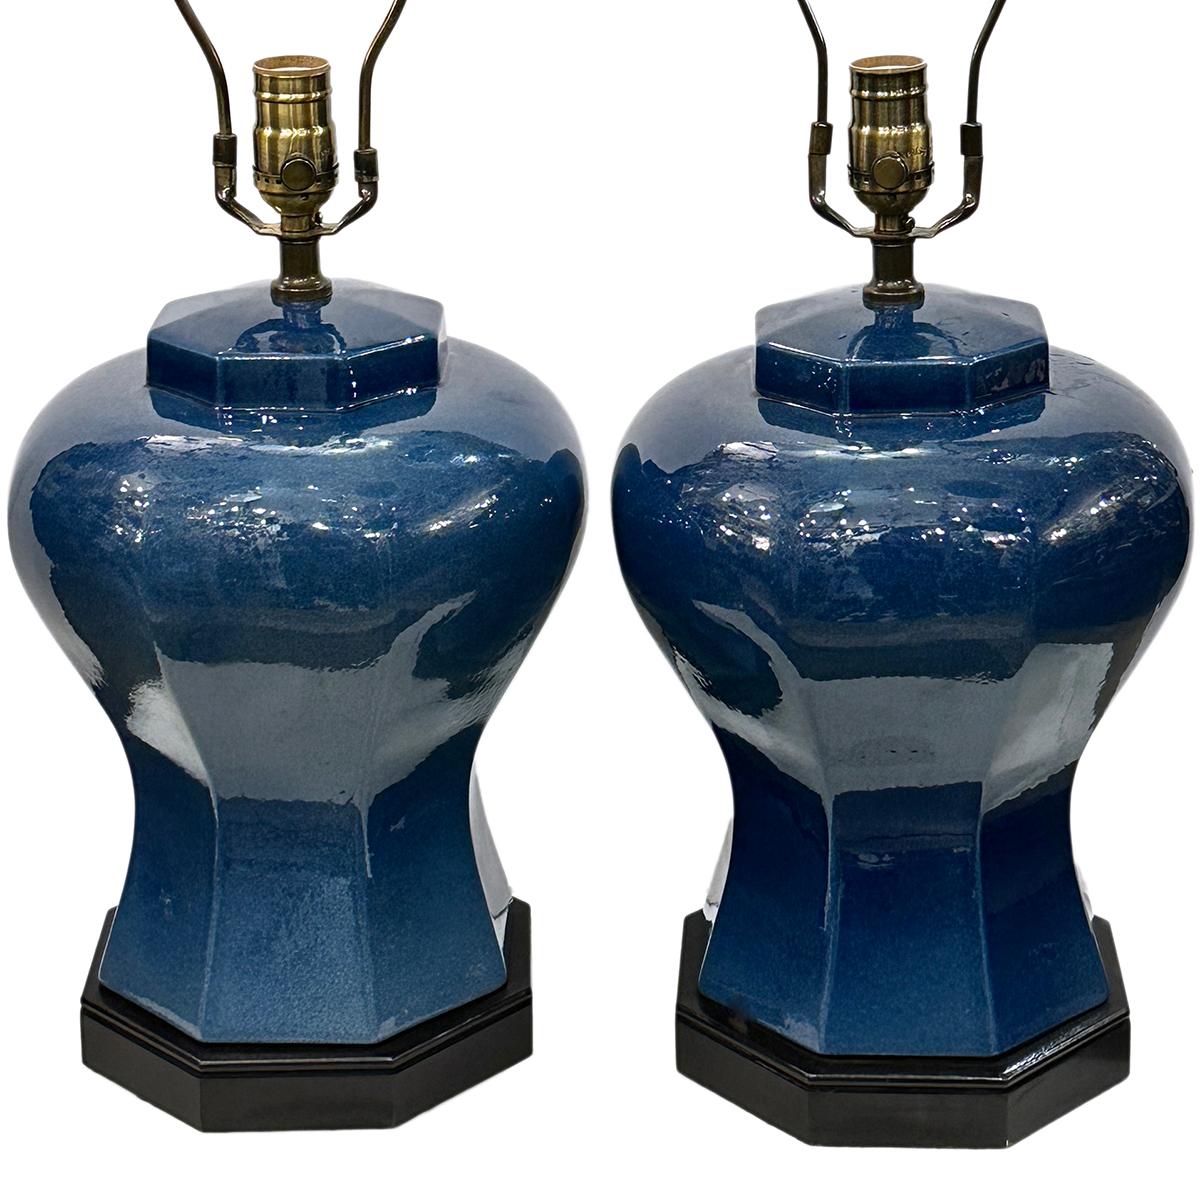 Ein Paar blaue französische Porzellanlampen aus den 1960er Jahren.

Abmessungen:
Höhe des Körpers: 14